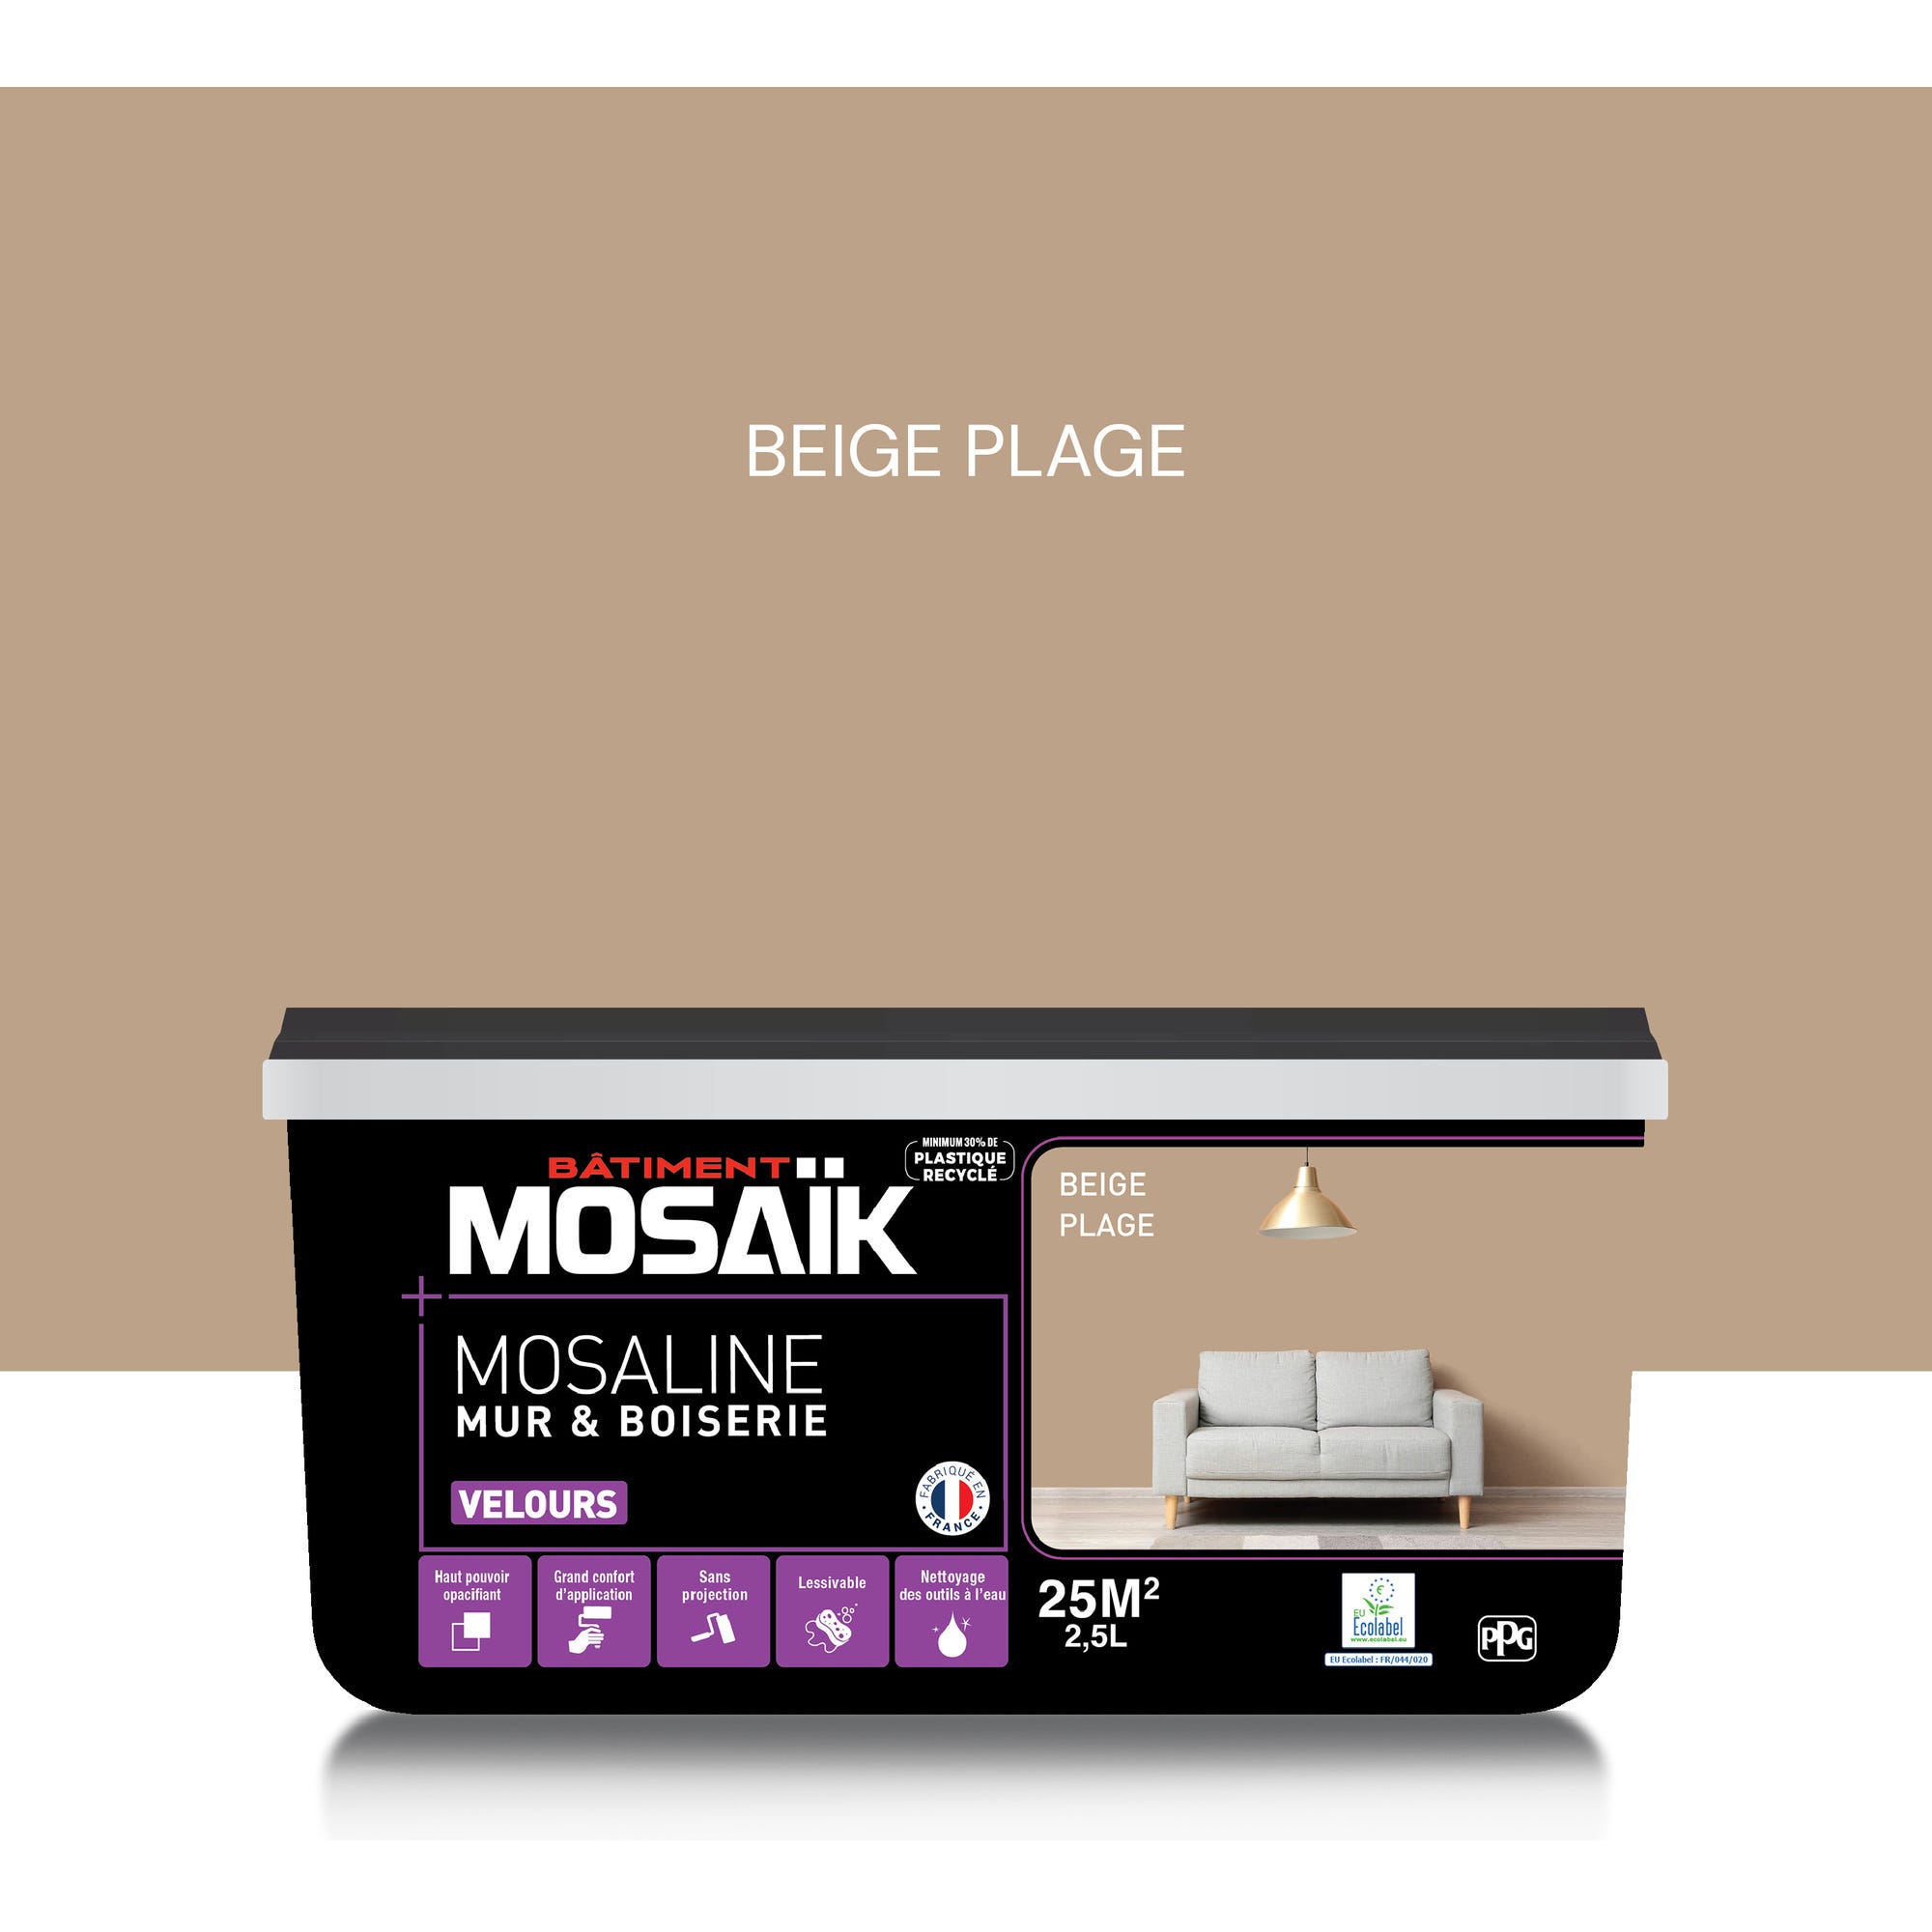 Peinture intérieure multi support acrylique velours beige plage 2,5 L Mosaline - MOSAIK 0